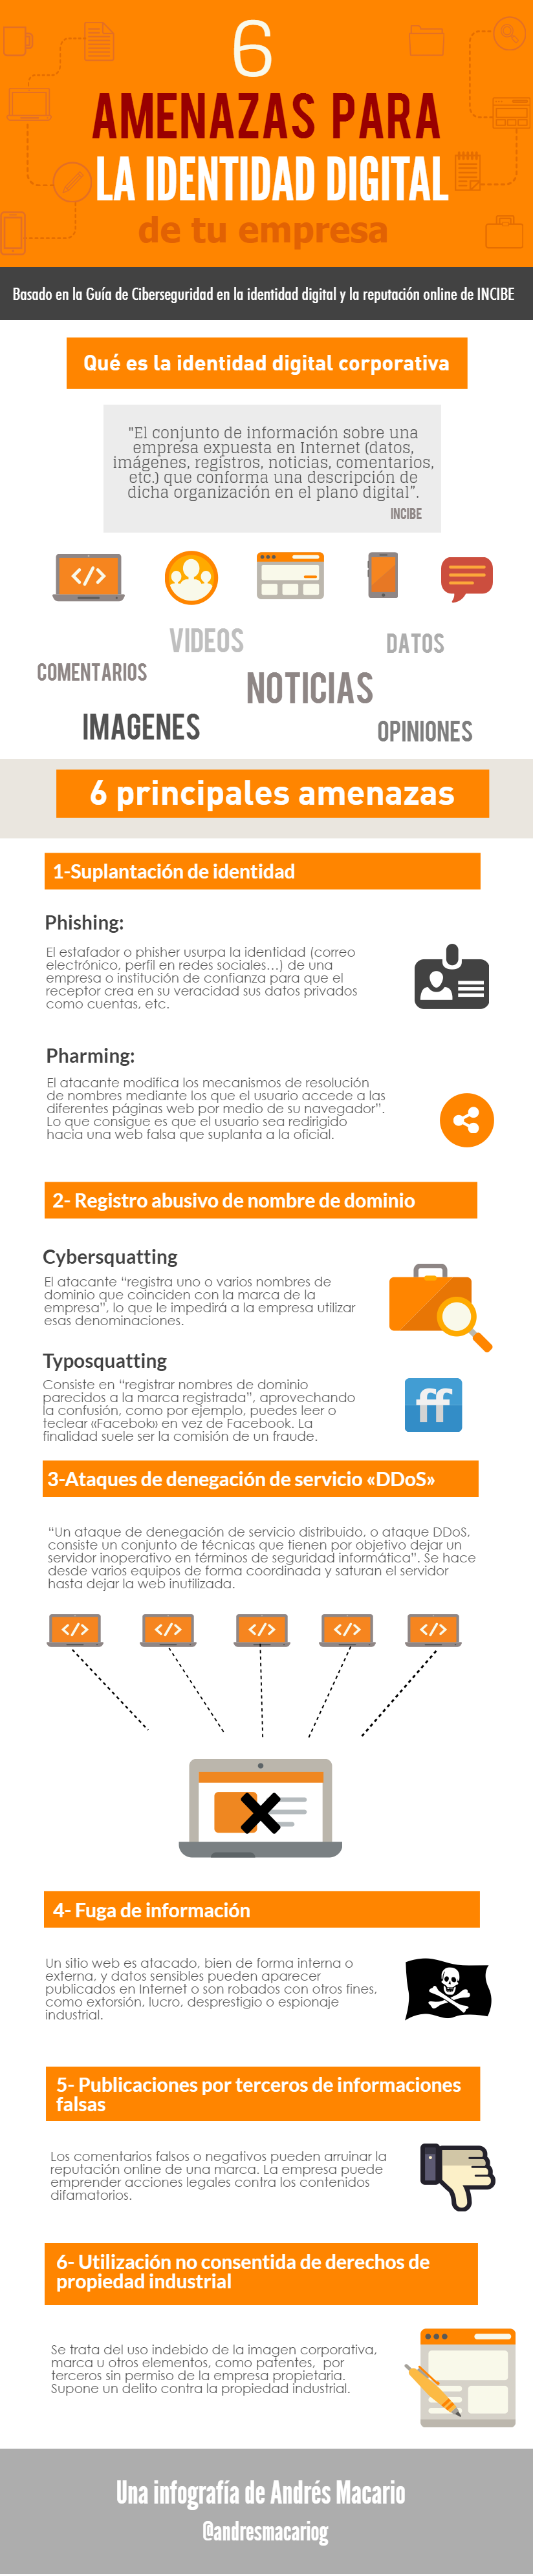 6 amenazas para la identidad digital de tu empresa - Infografia Andres Macario